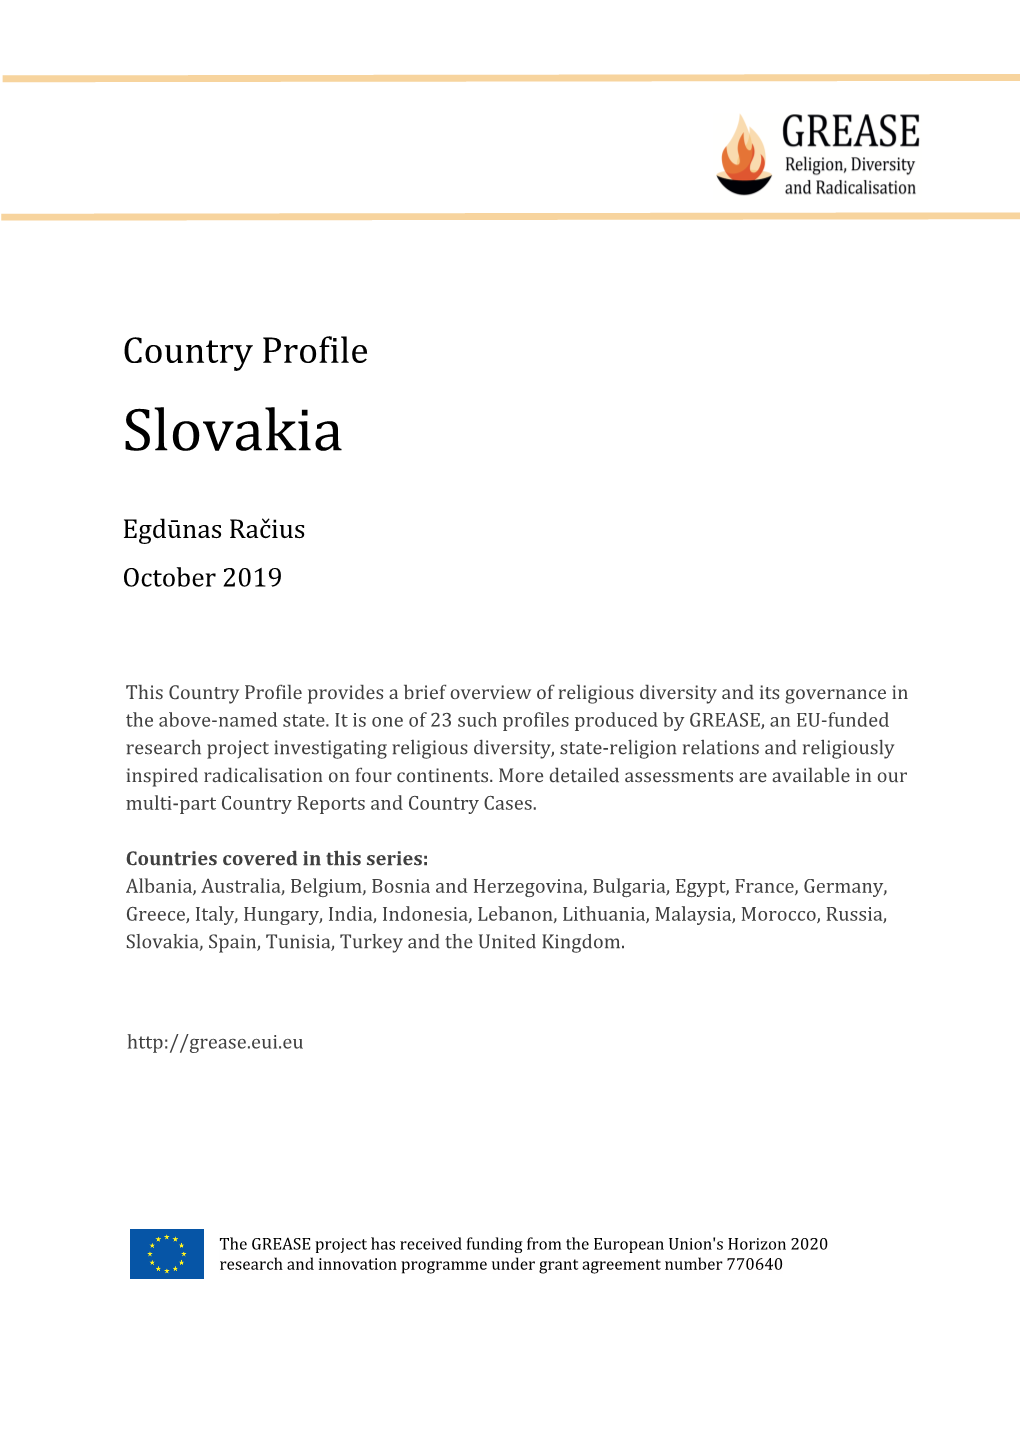 Slovakia Profile